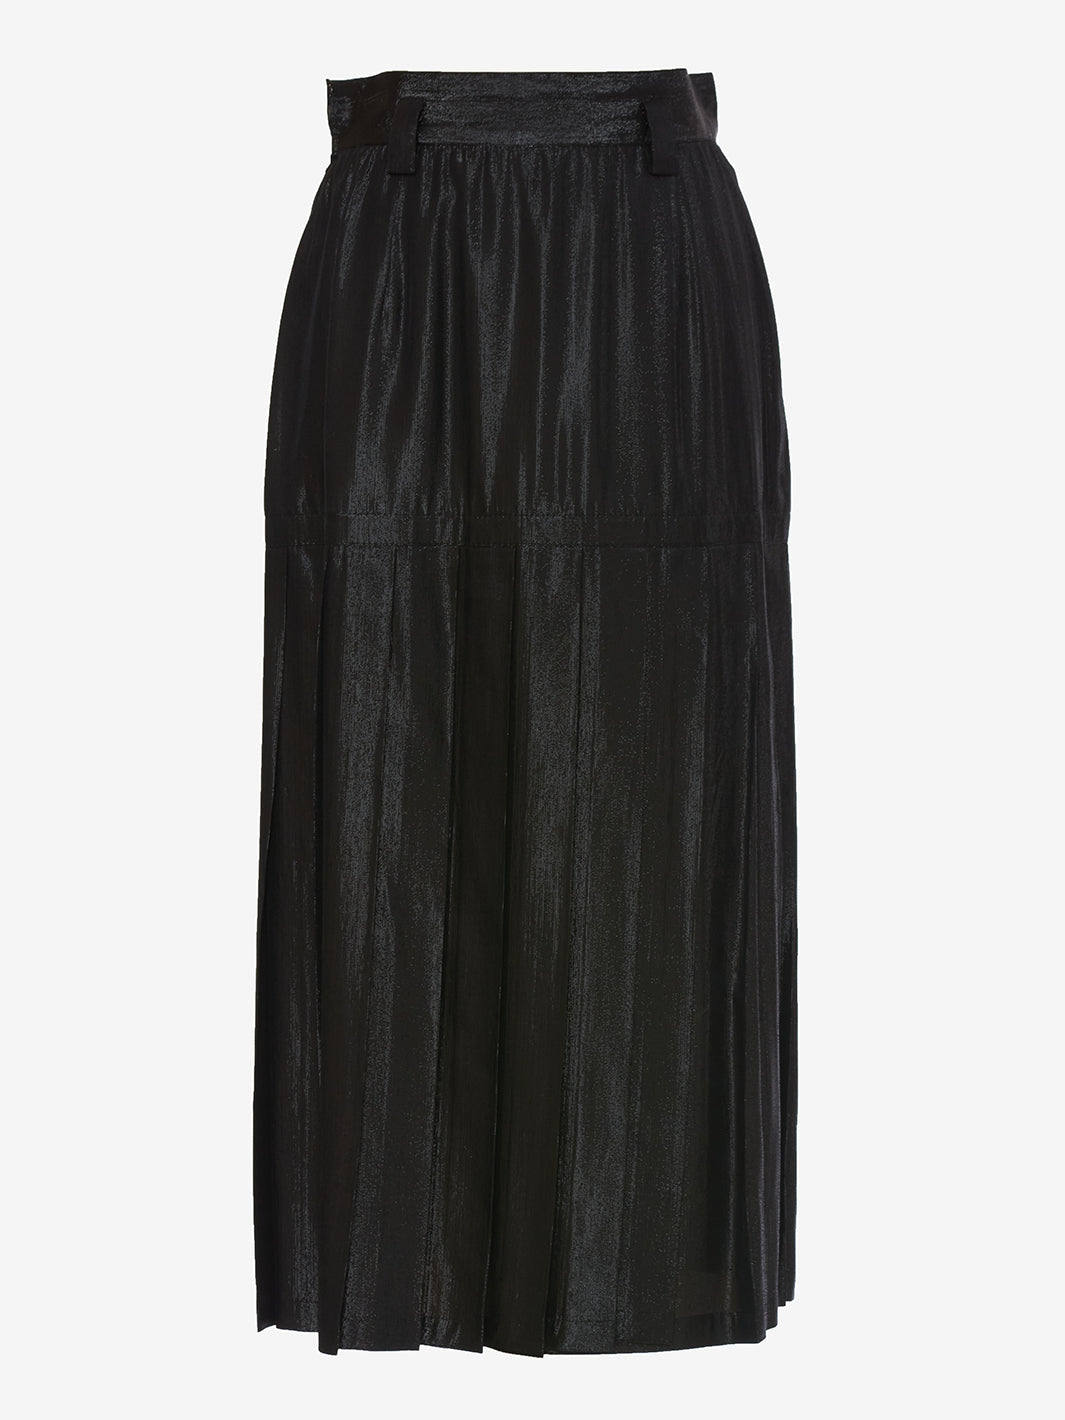 Gianni Versace Silk Midi Skirt